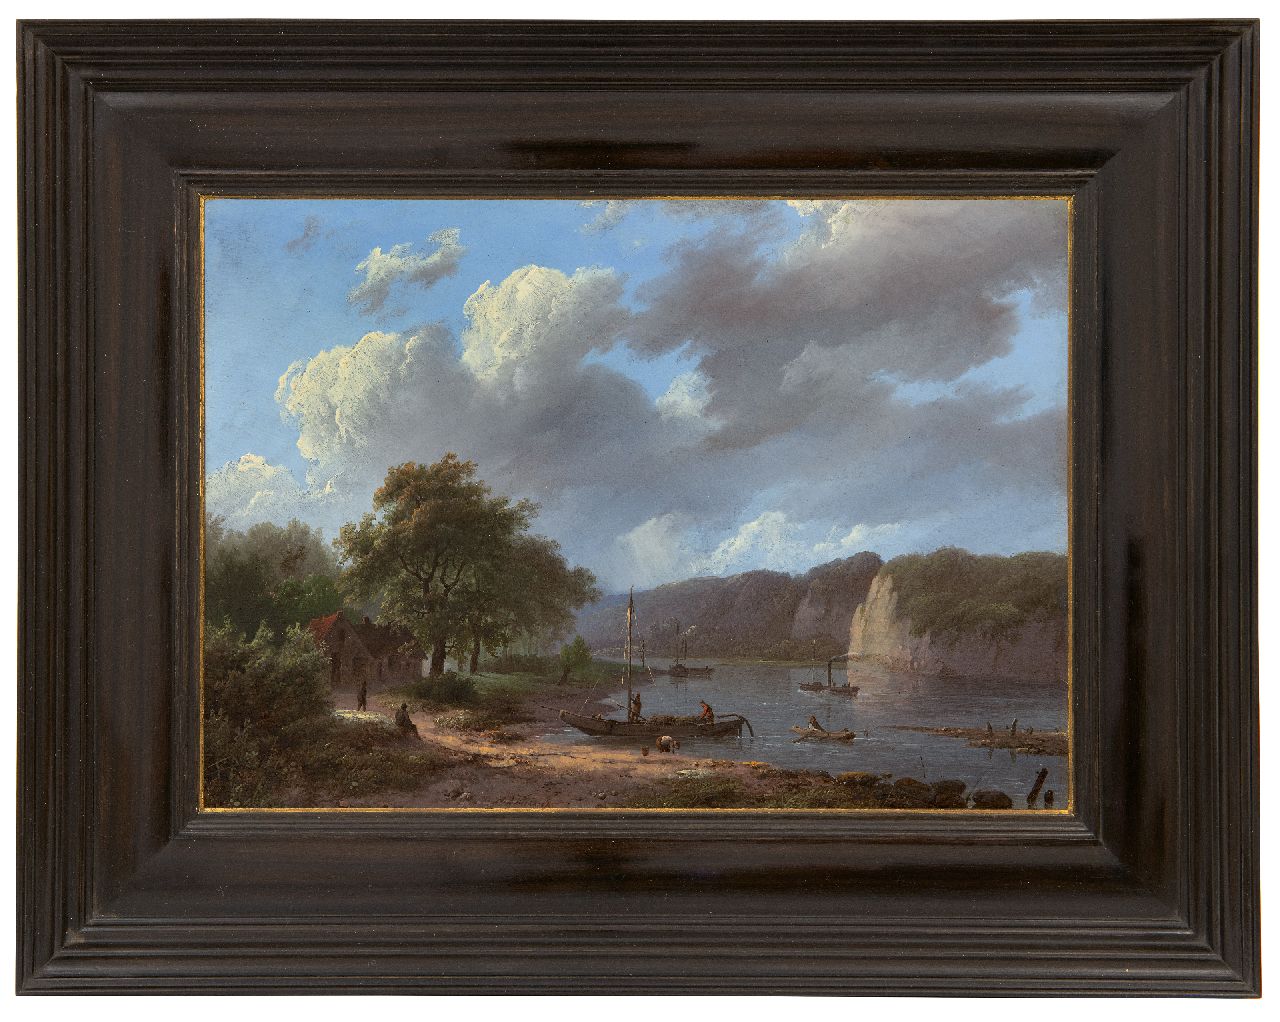 Koekkoek I M.A.  | Marinus Adrianus Koekkoek I | Schilderijen te koop aangeboden | Rijnlandschap, olieverf op paneel 22,1 x 31,1 cm, gesigneerd middenonder en gedateerd 1847